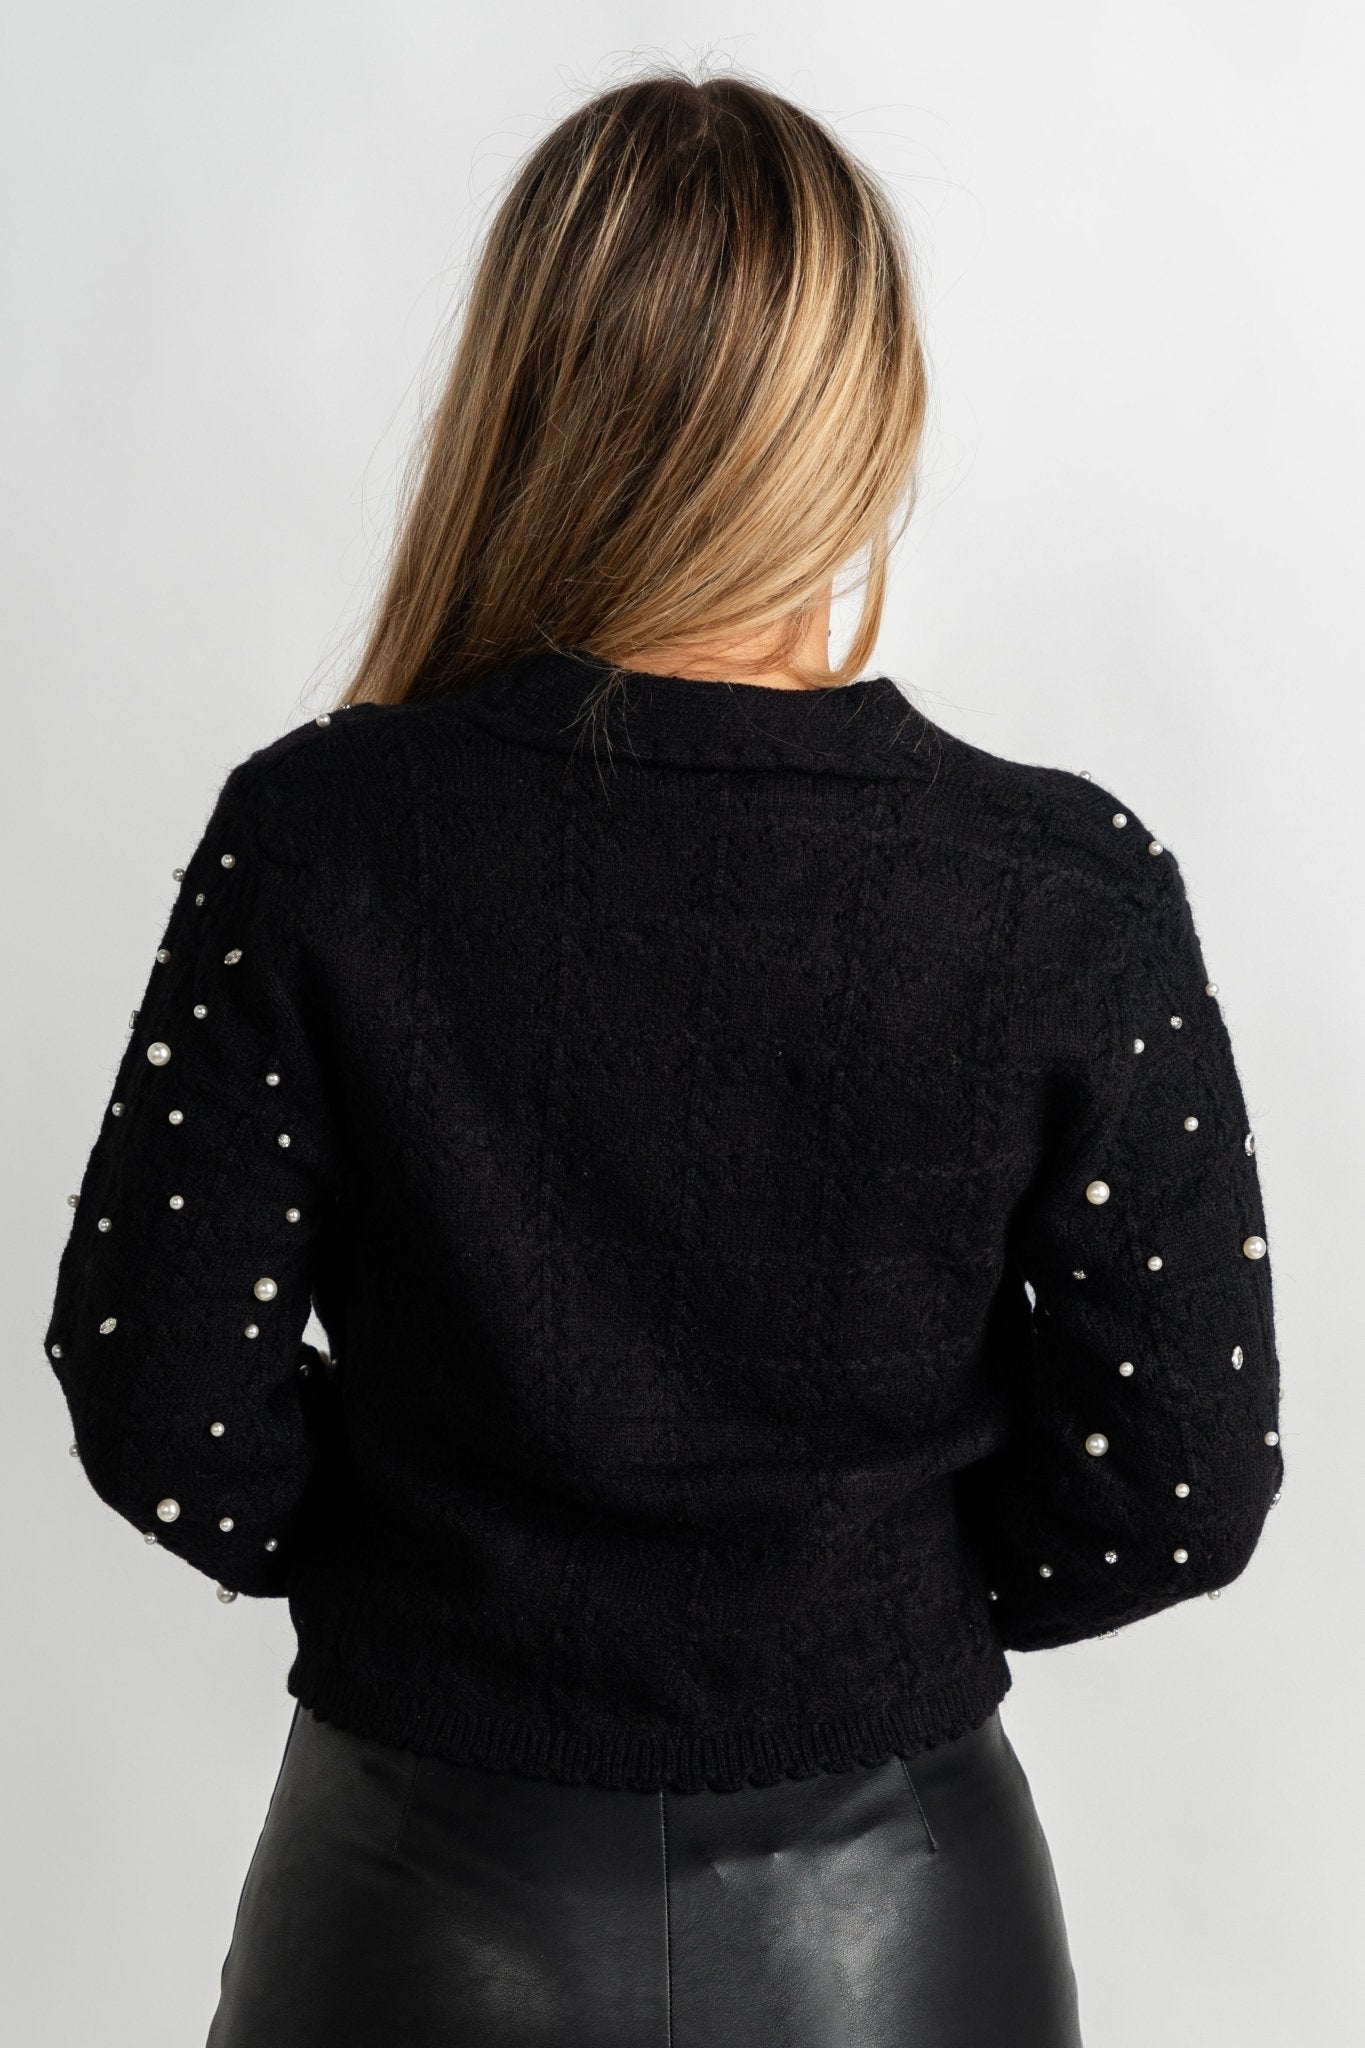 Pearl rhinestone sweater cardigan black